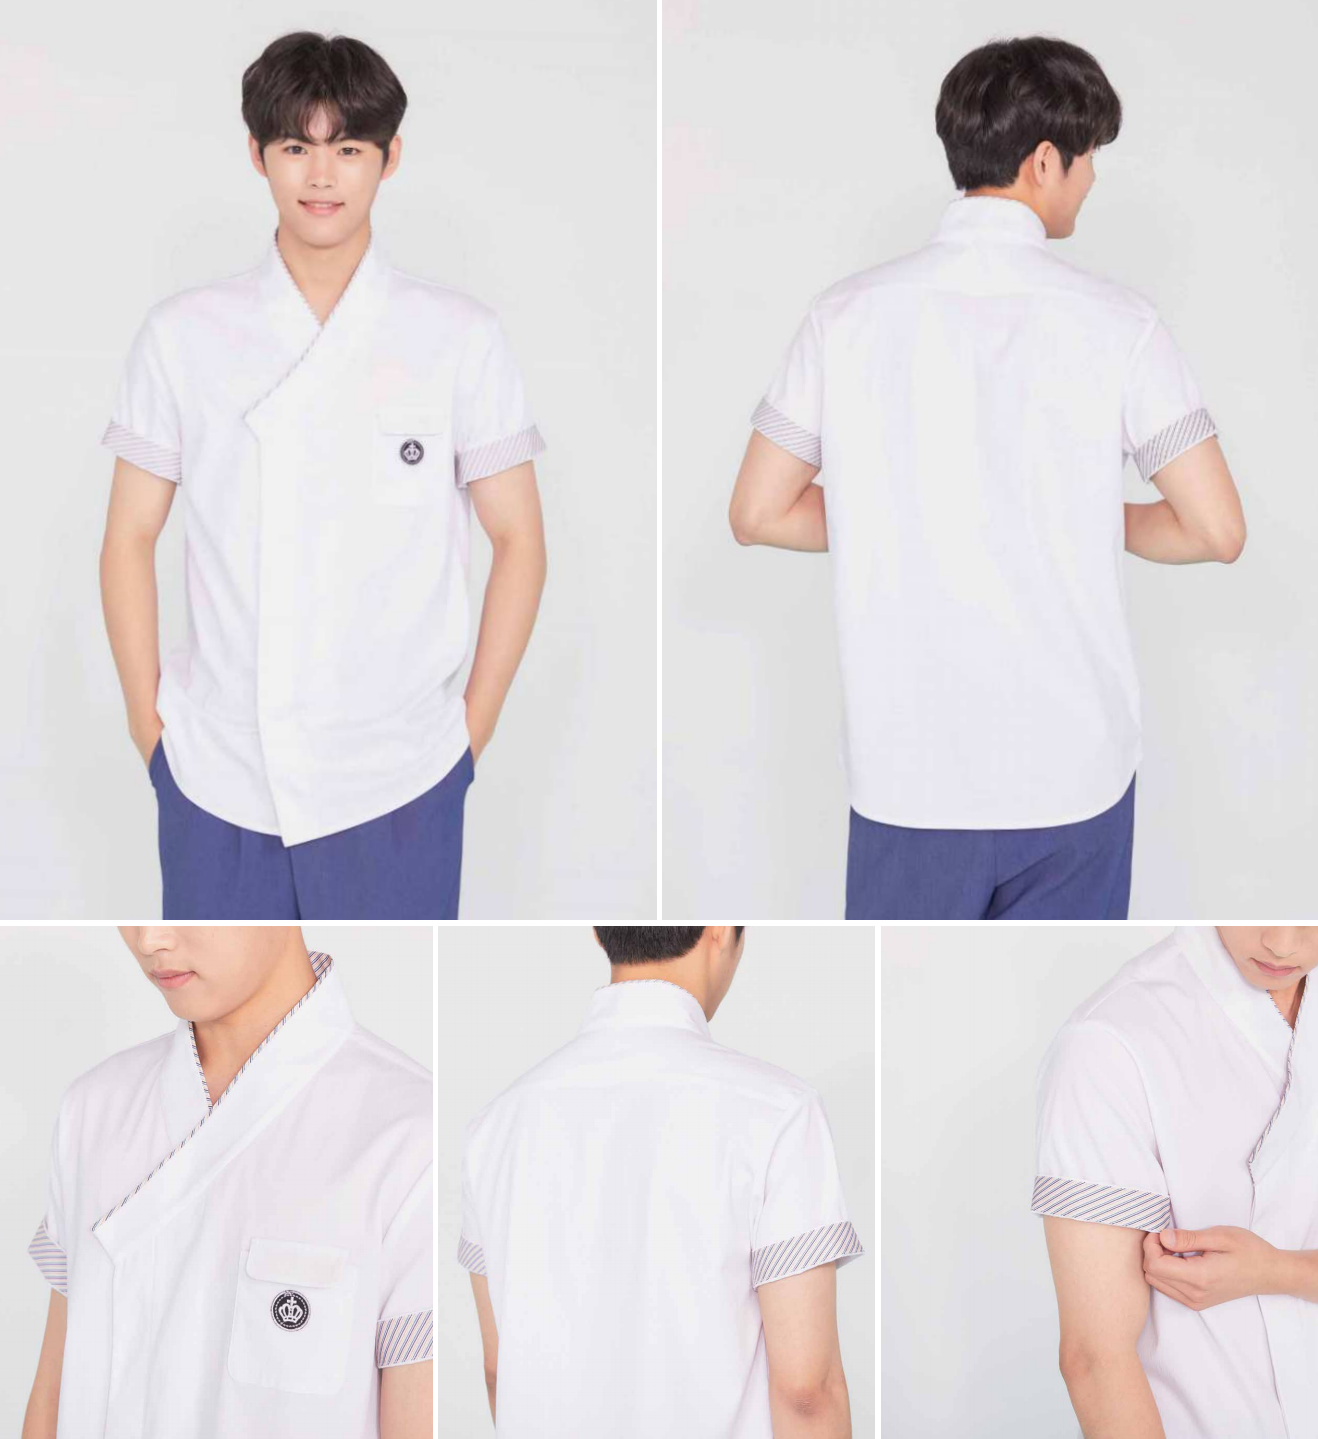 Hanbok Uniforms - Men's summer style shirt